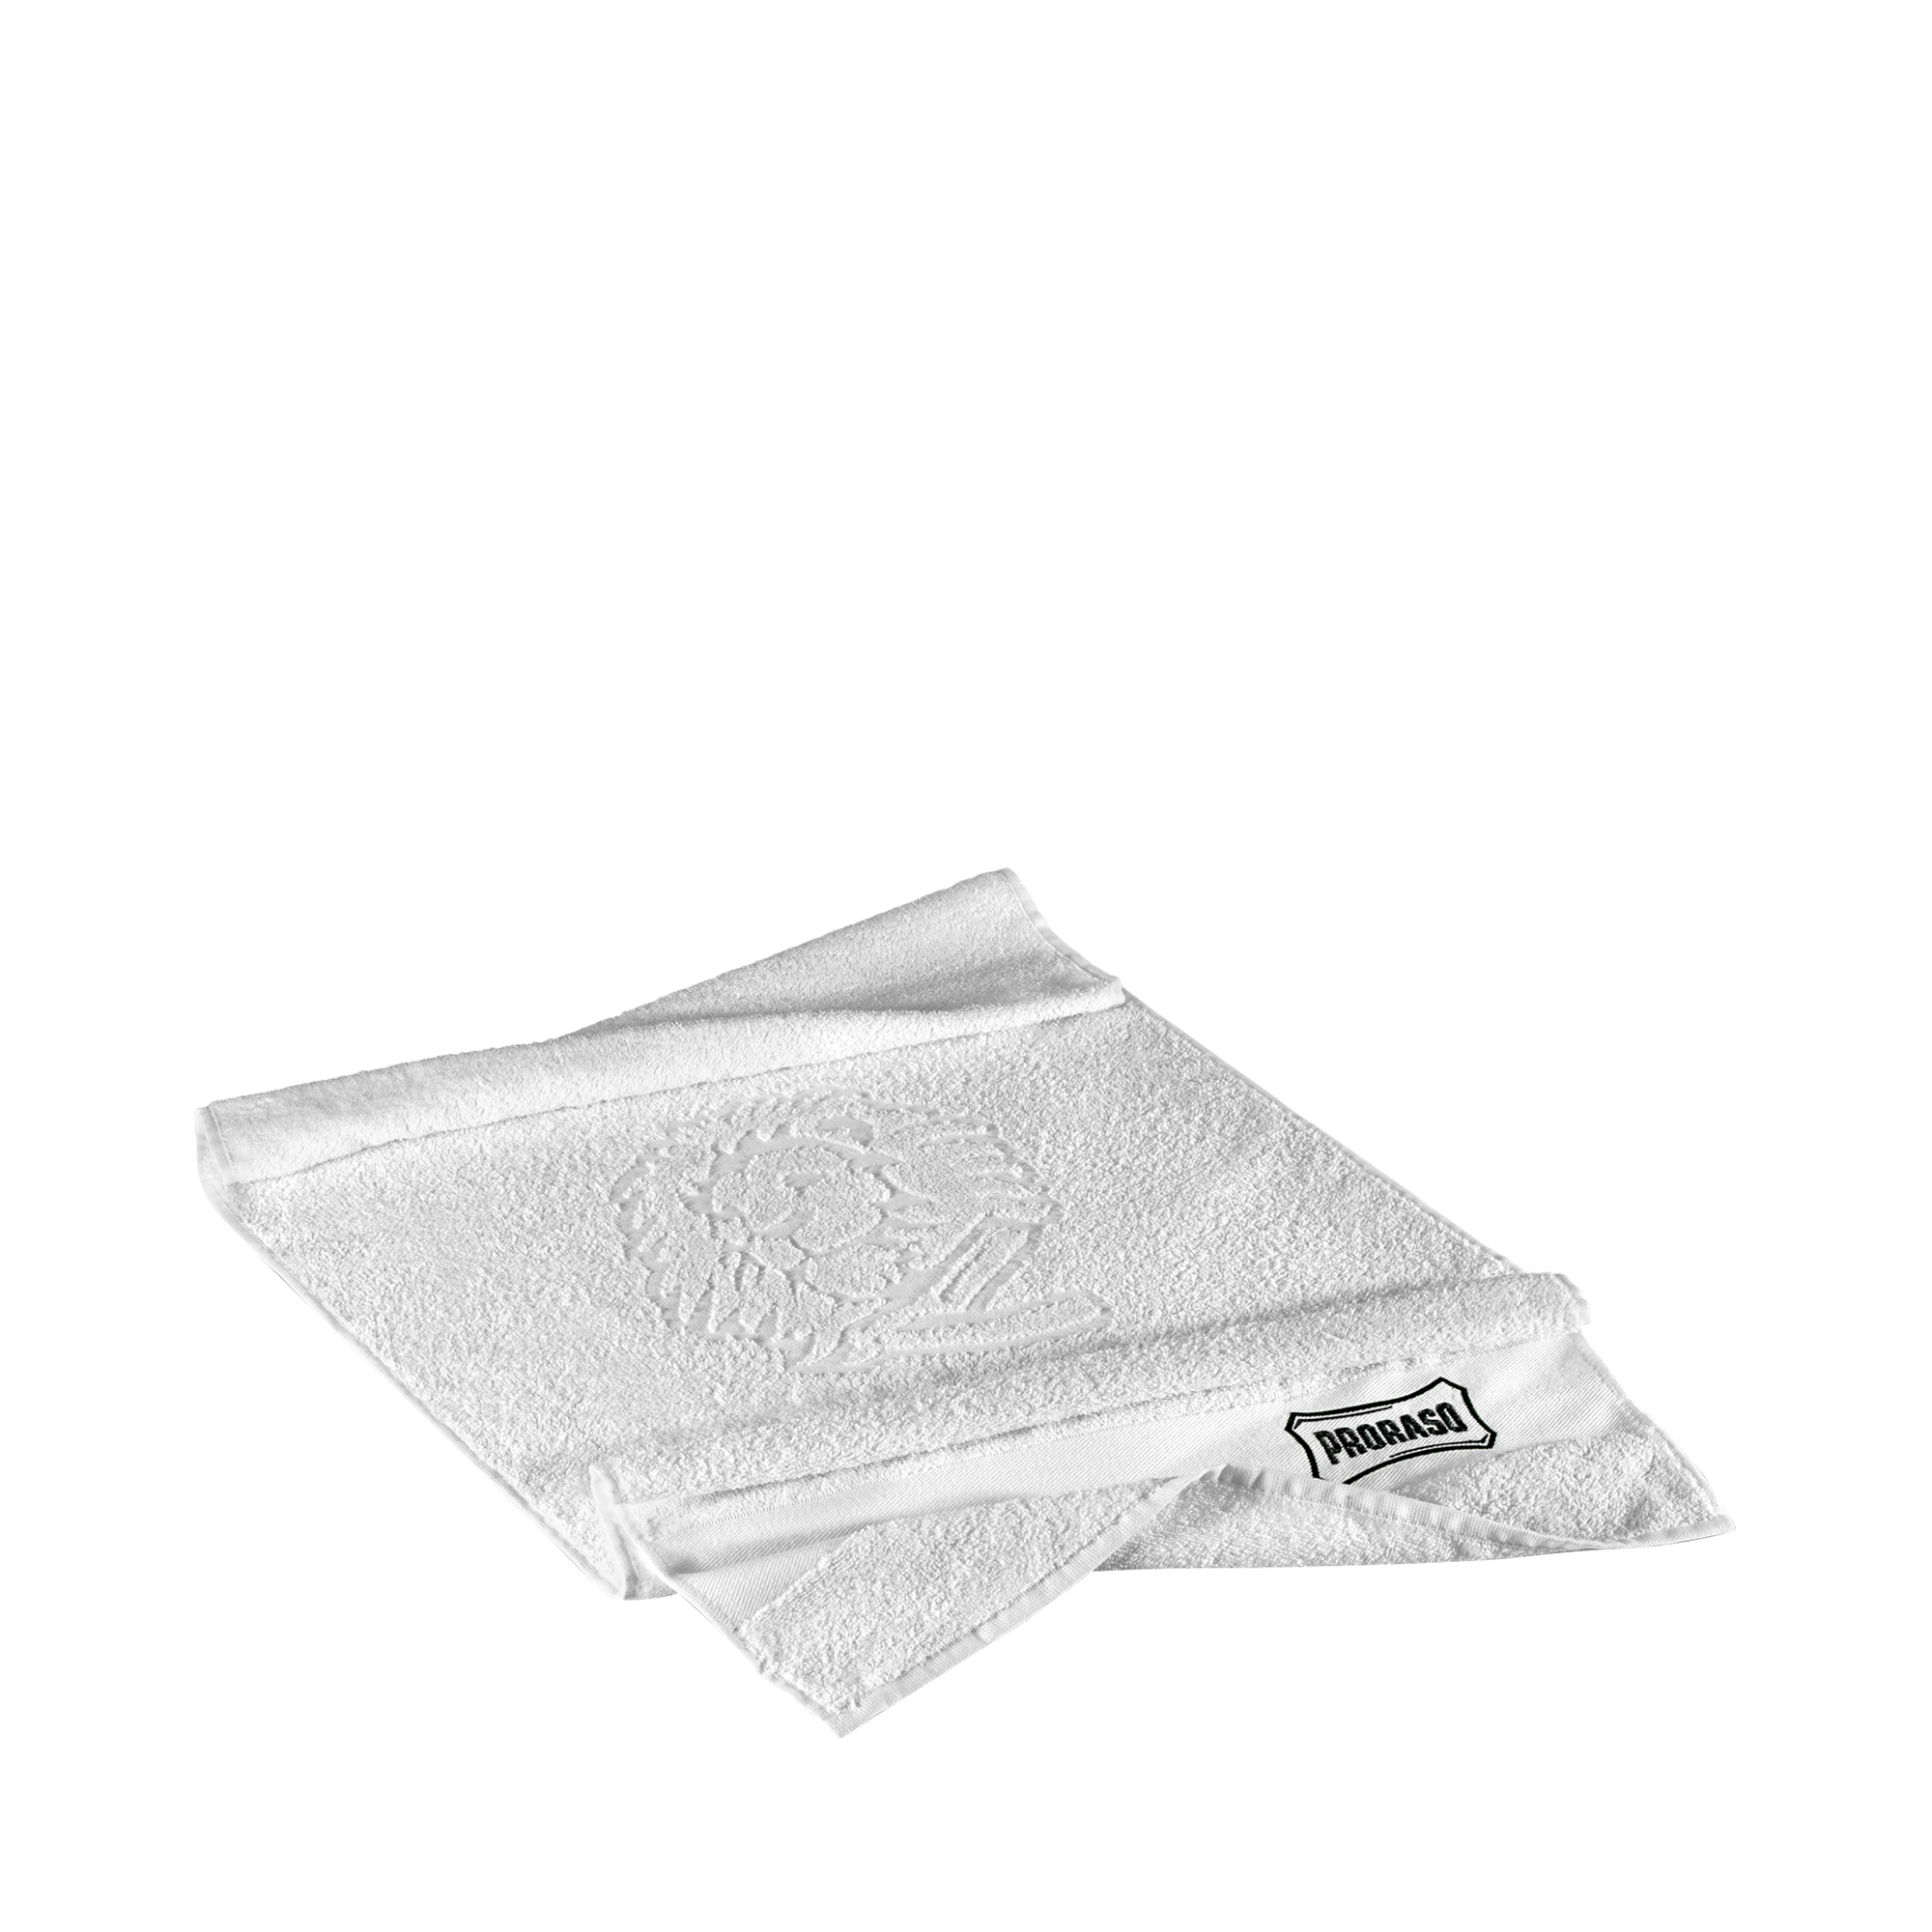 Proraso - Handtuch aus Baumwolle - 40 x 80 cm